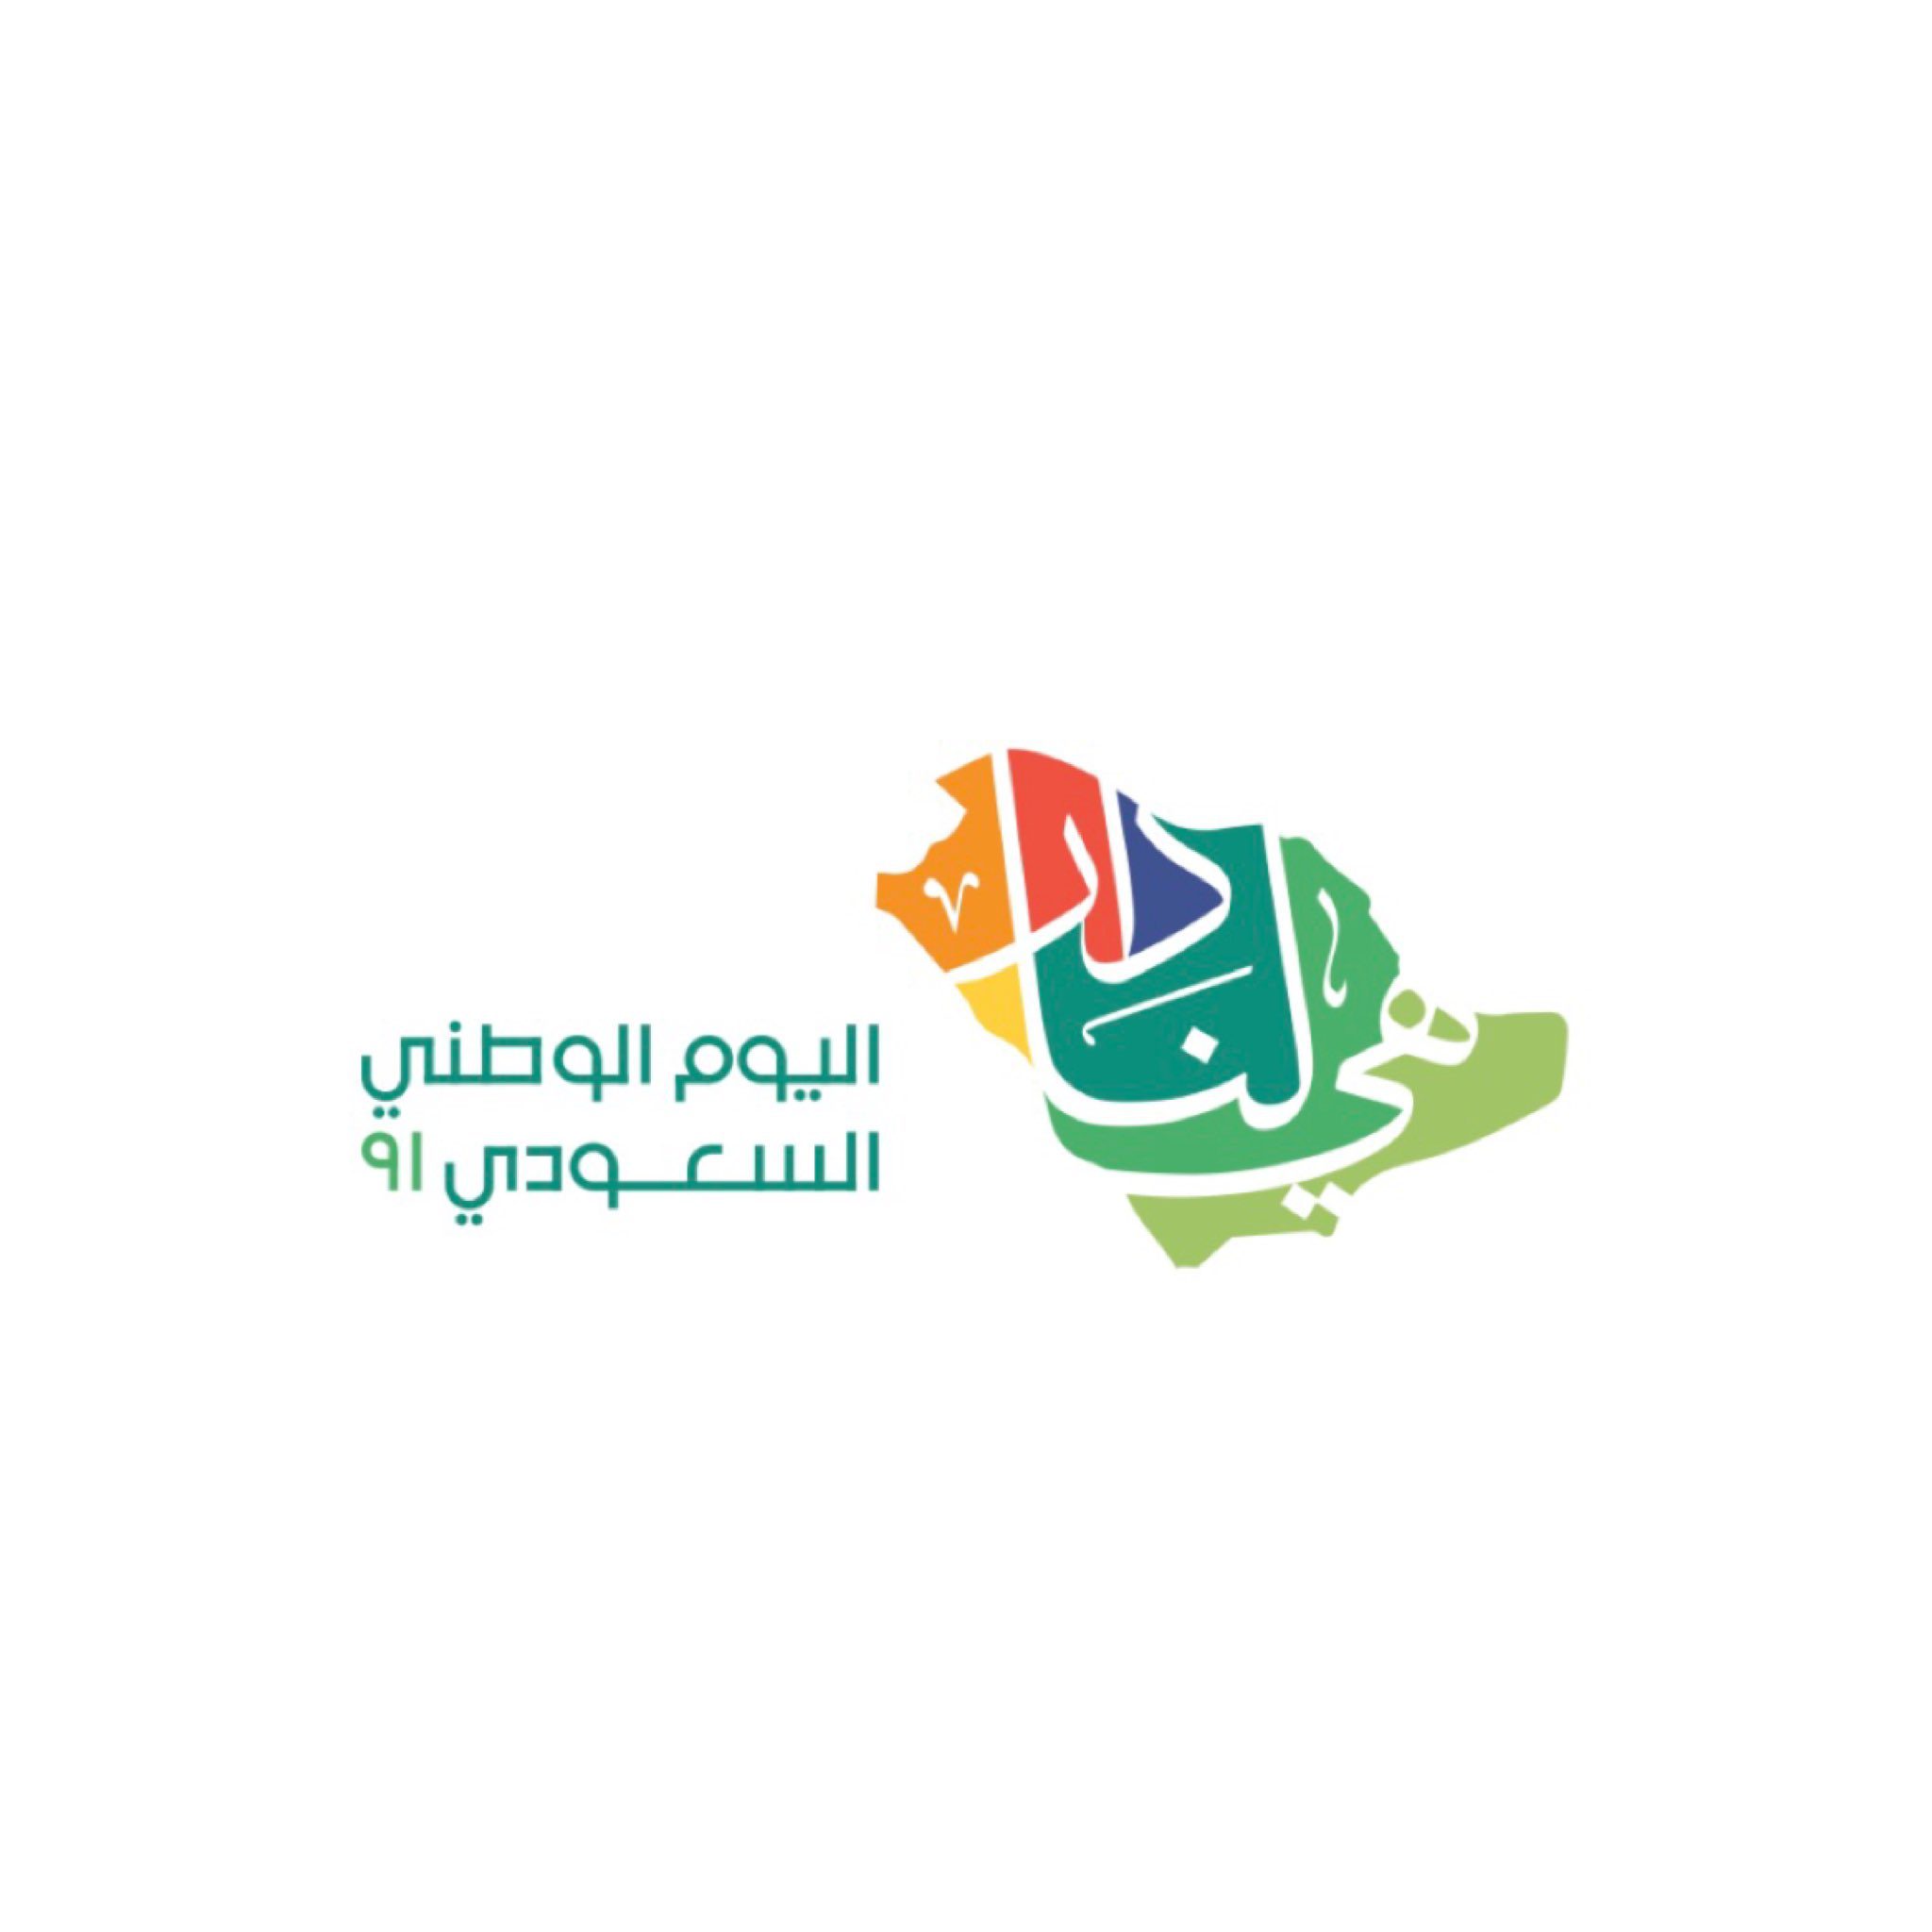 صور شعار اليوم الوطني 91 السعودي هي لنا دار 1443 – 2021